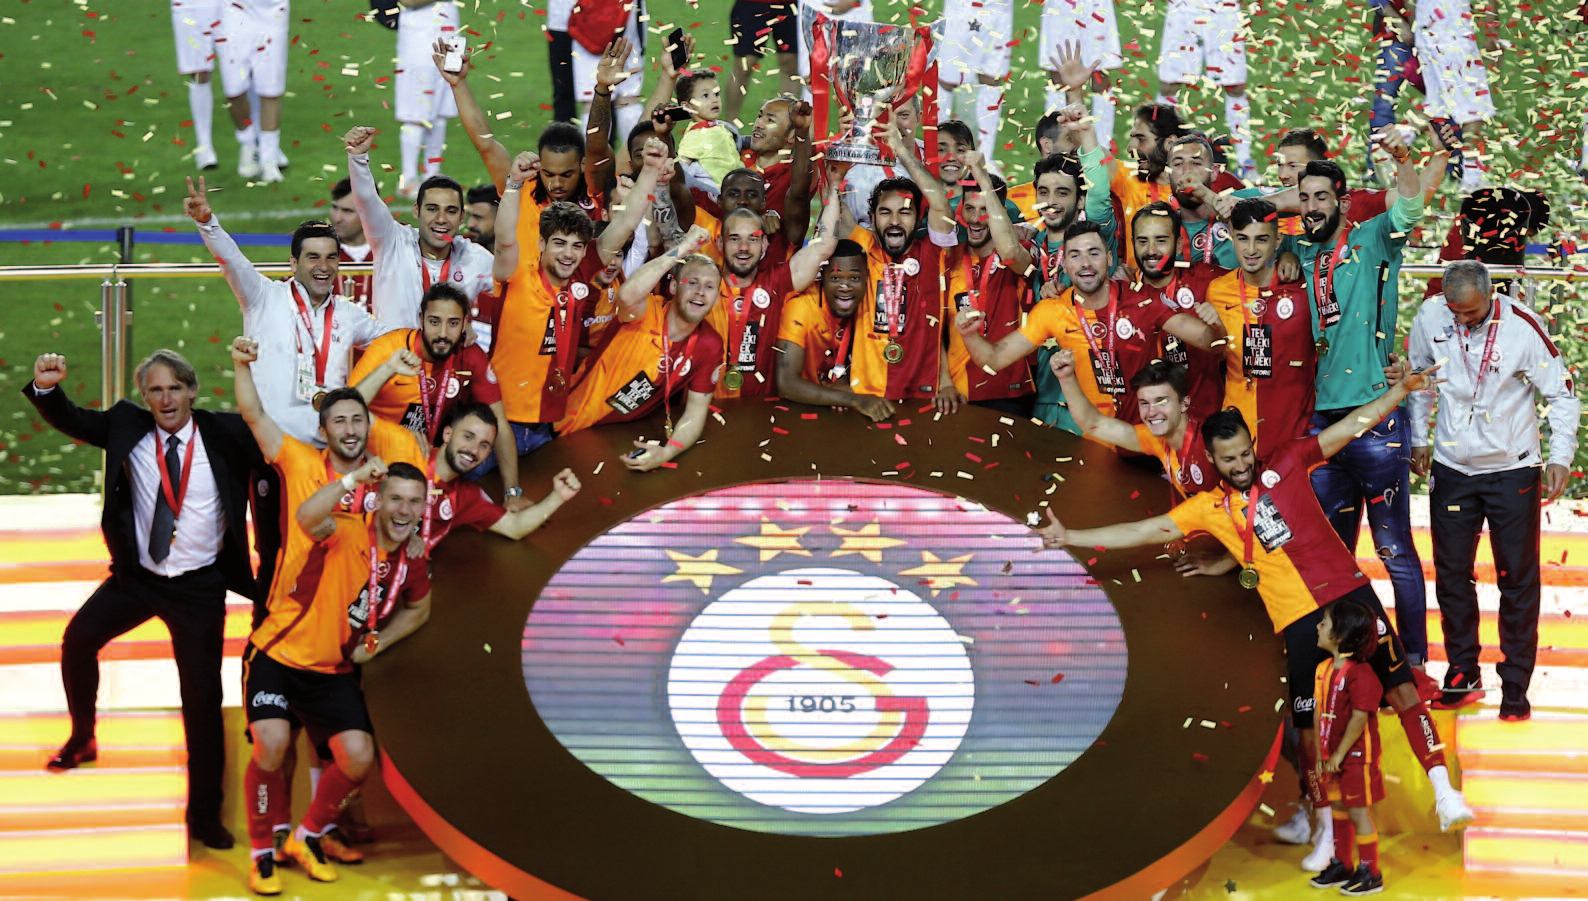 S üper Kupa nın bir ucundan Ziraat Türkiye Kupası sahibi olarak tutan Galatasaray, Türkiye Kupası ndaki mücadelesine grup aşamasından başladı.